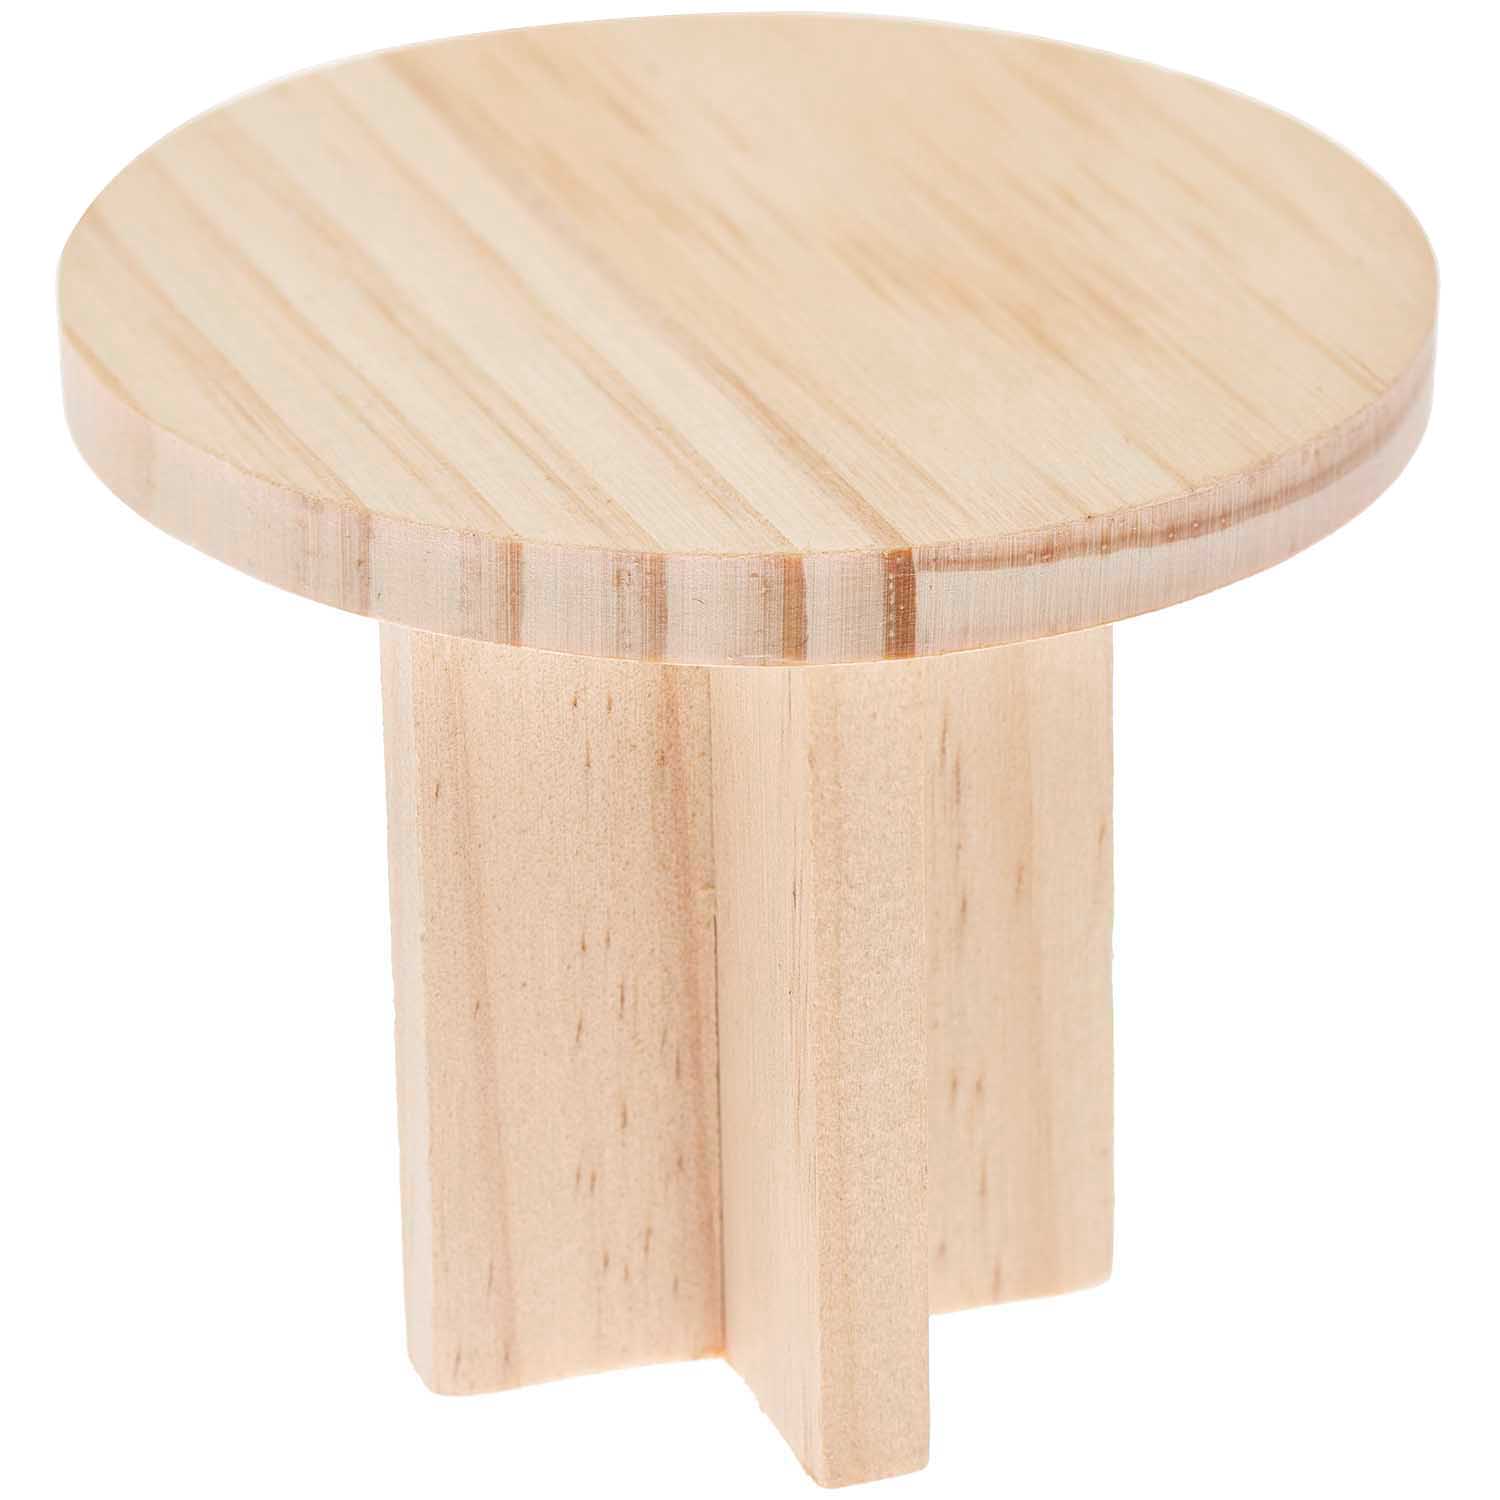 Runder Miniatur Tisch als Zubehör für die Wichtelwelt, 8x8x6,5cm